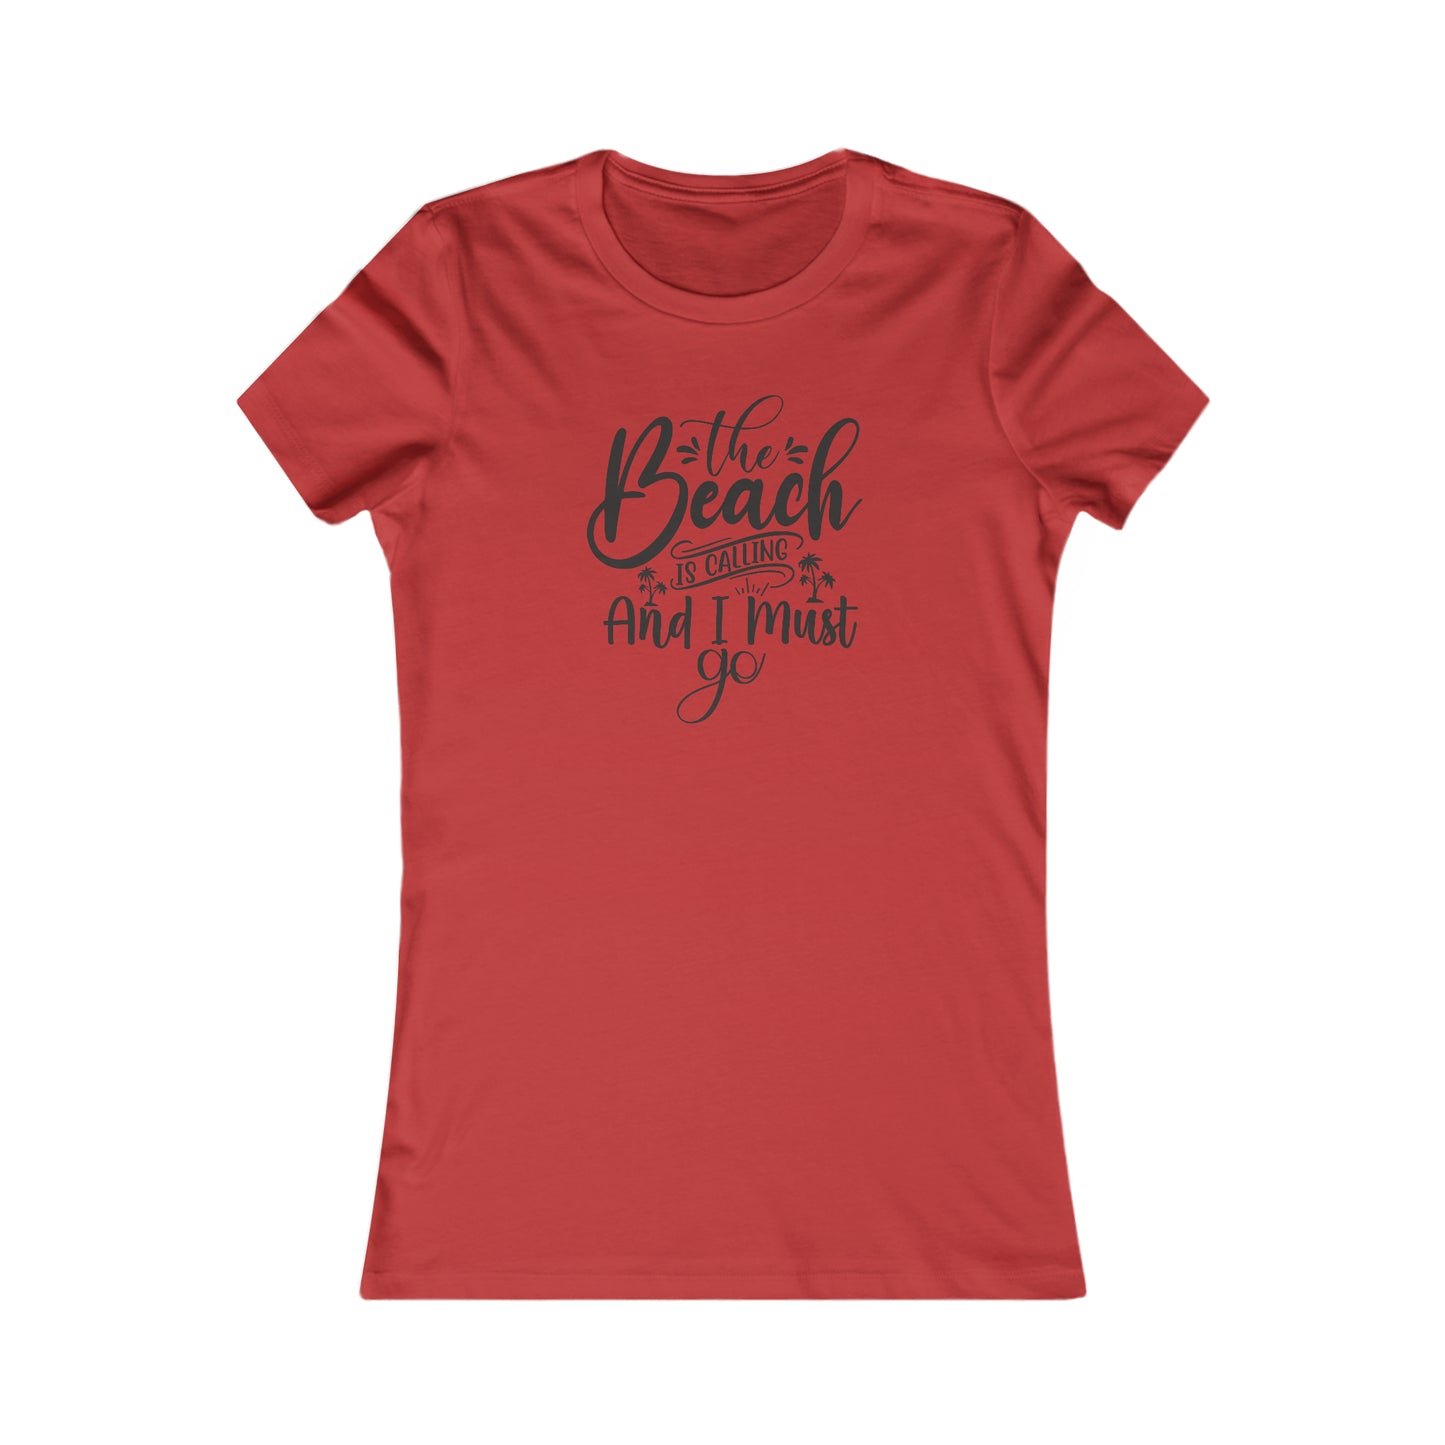 Beach T-Shirt For The Beach Is Calling TShirt For Fun Beach T Shirt For Girly Beach Tee